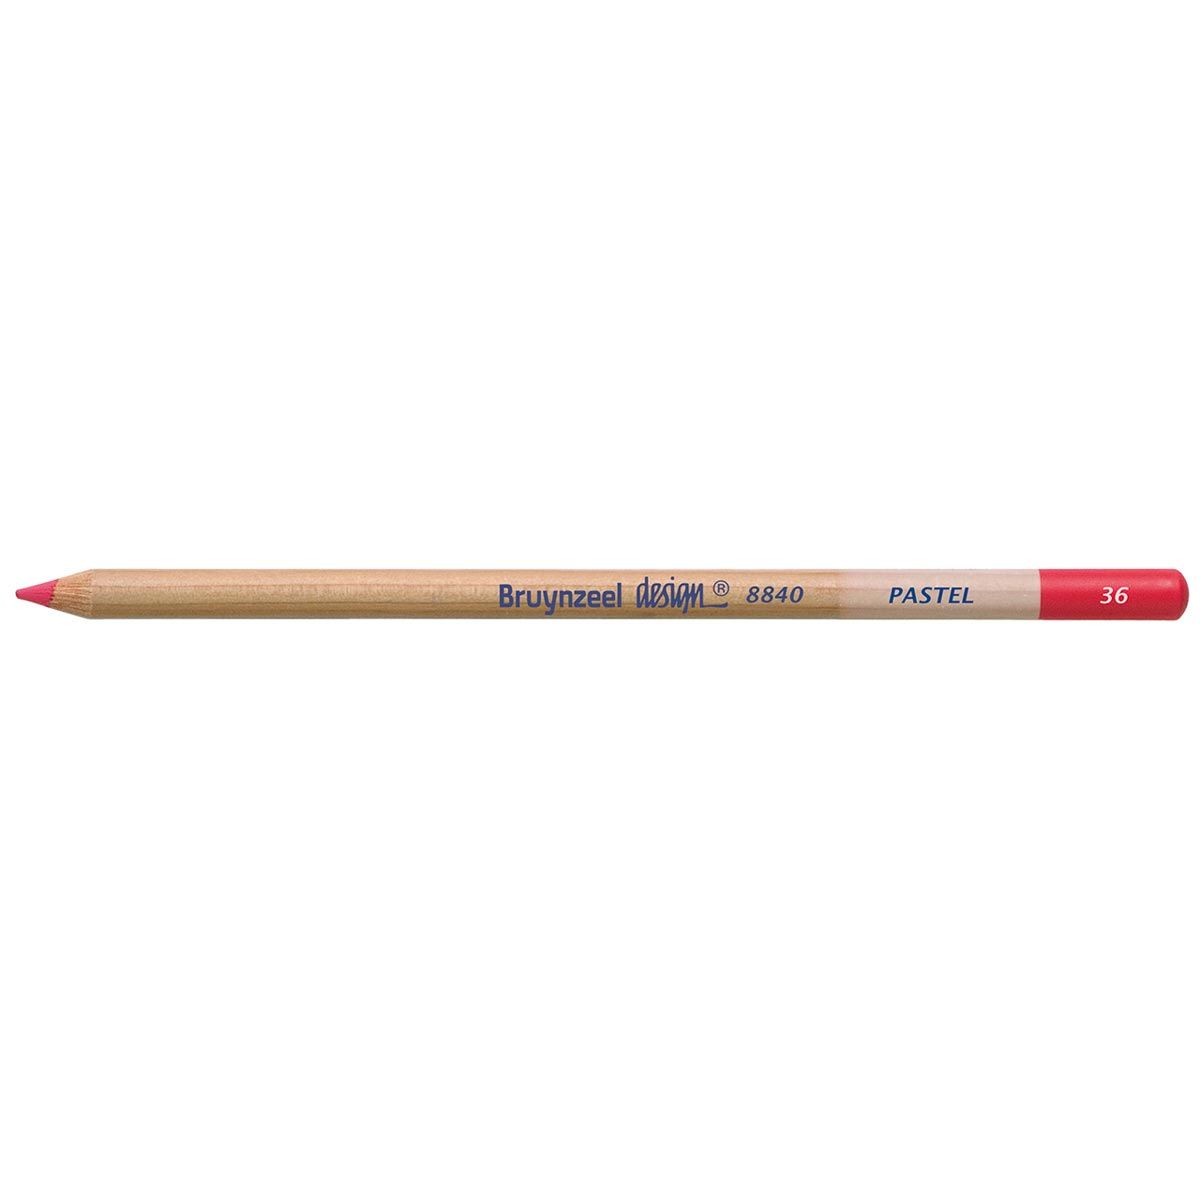 Bruynzeel Design Pastel Pencil - Dark Pink 36